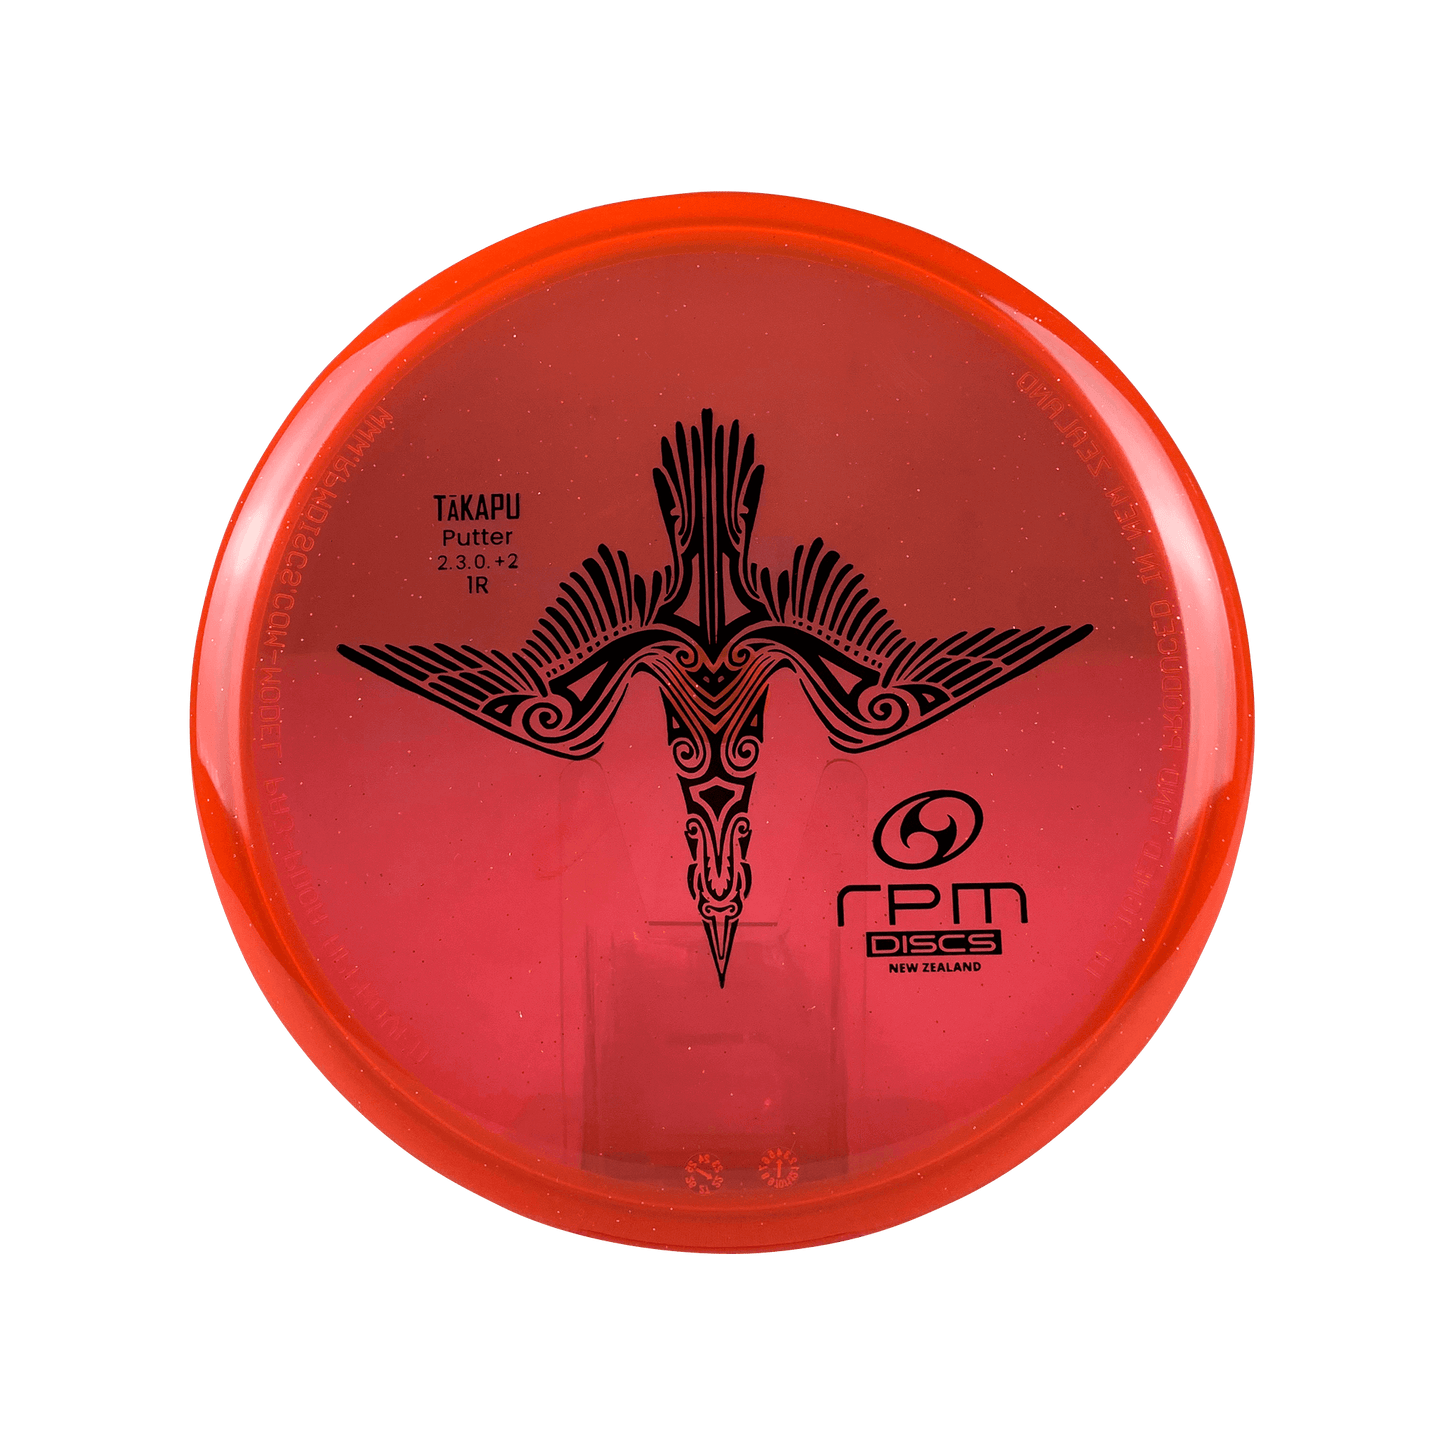 Cosmic Takapu - First Run Disc RPM Discs red 171 